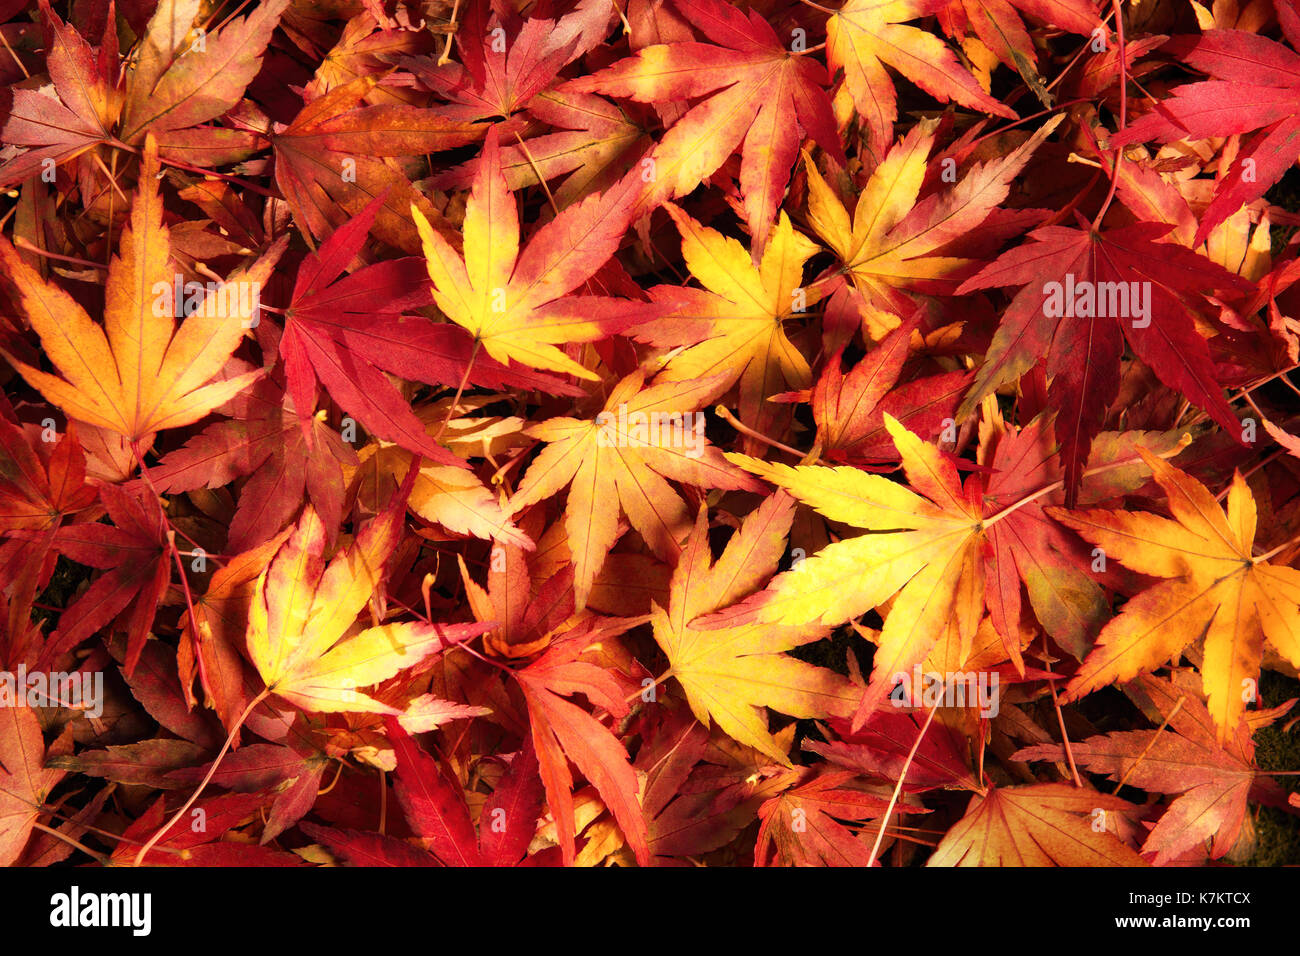 Giapponese di foglie di acero in dreamy colori caldi giacente sul terreno, ornate pattern Foto Stock